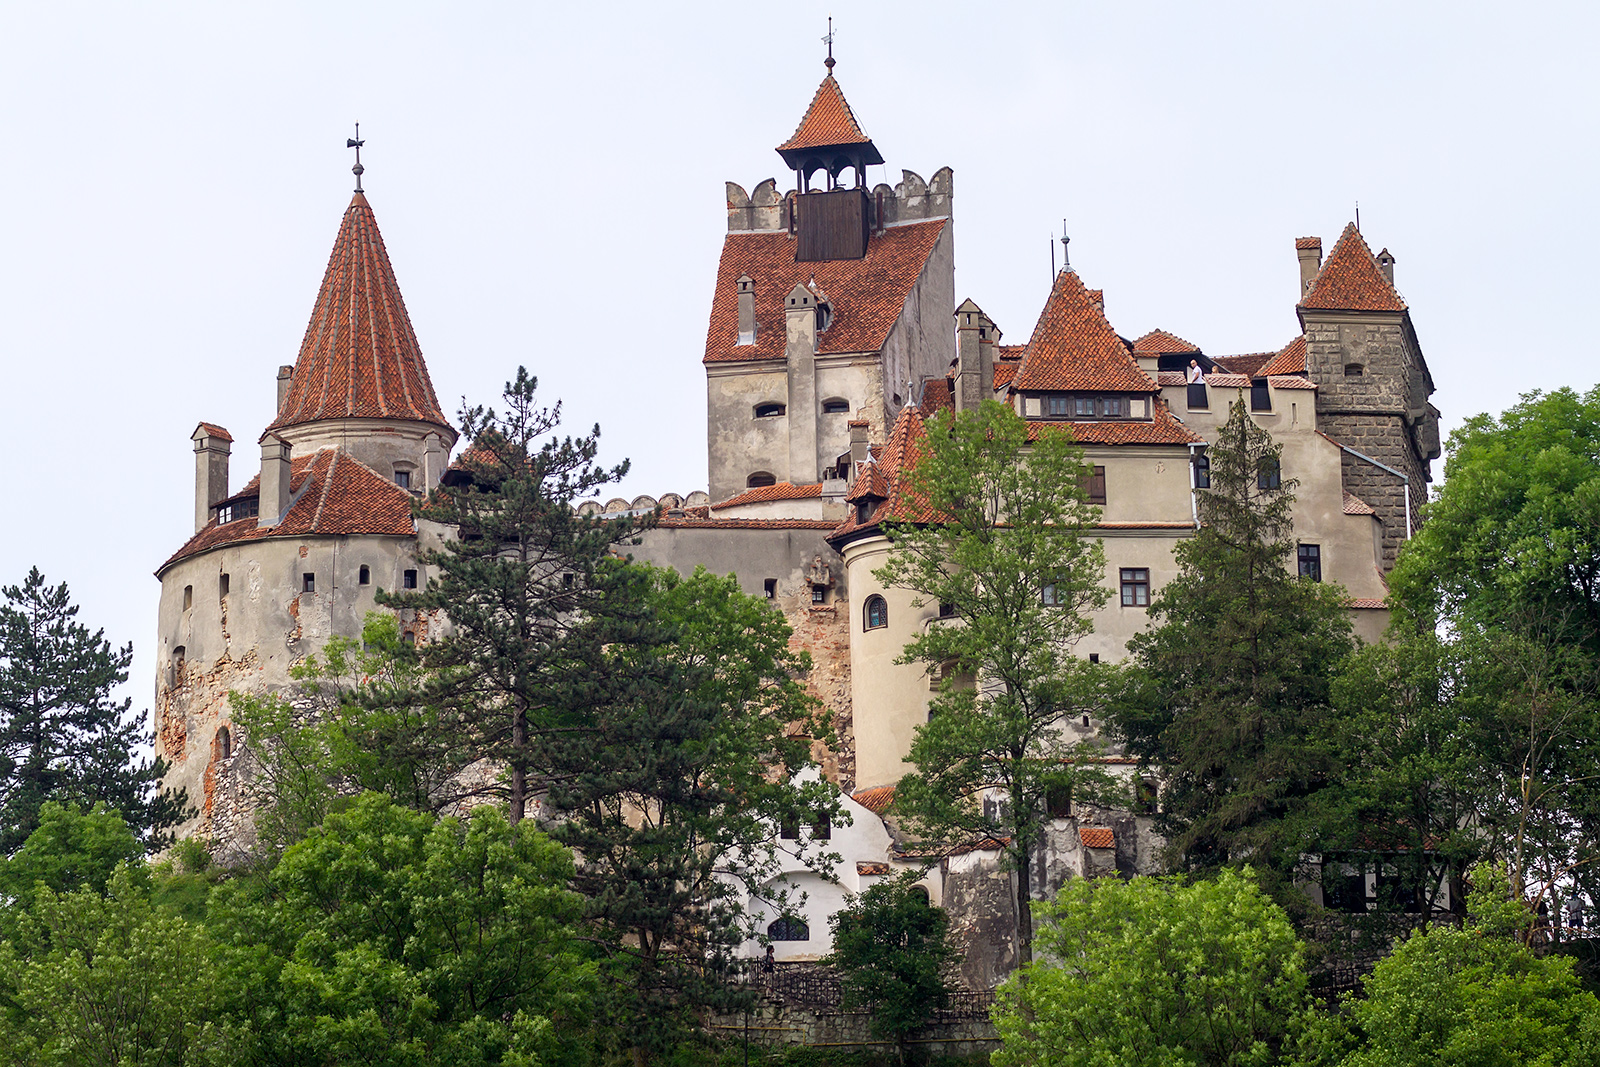 Grad v Branu, oglaševan kot Grad Drakula oziroma Grad Vlad Tepeš